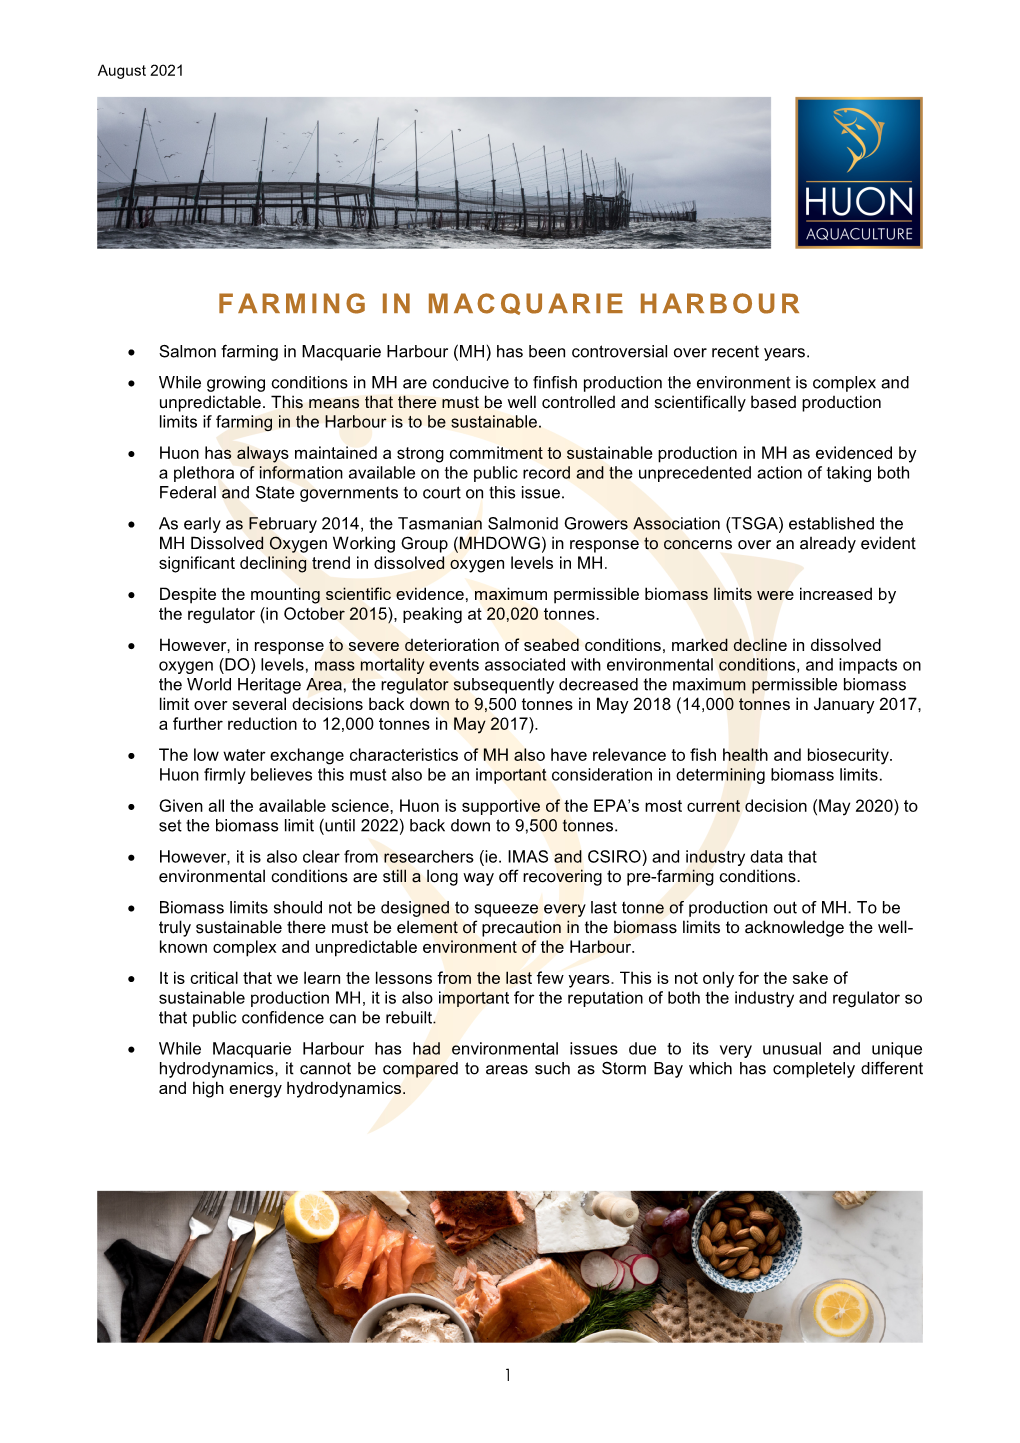 Farming in Macquarie Harbour